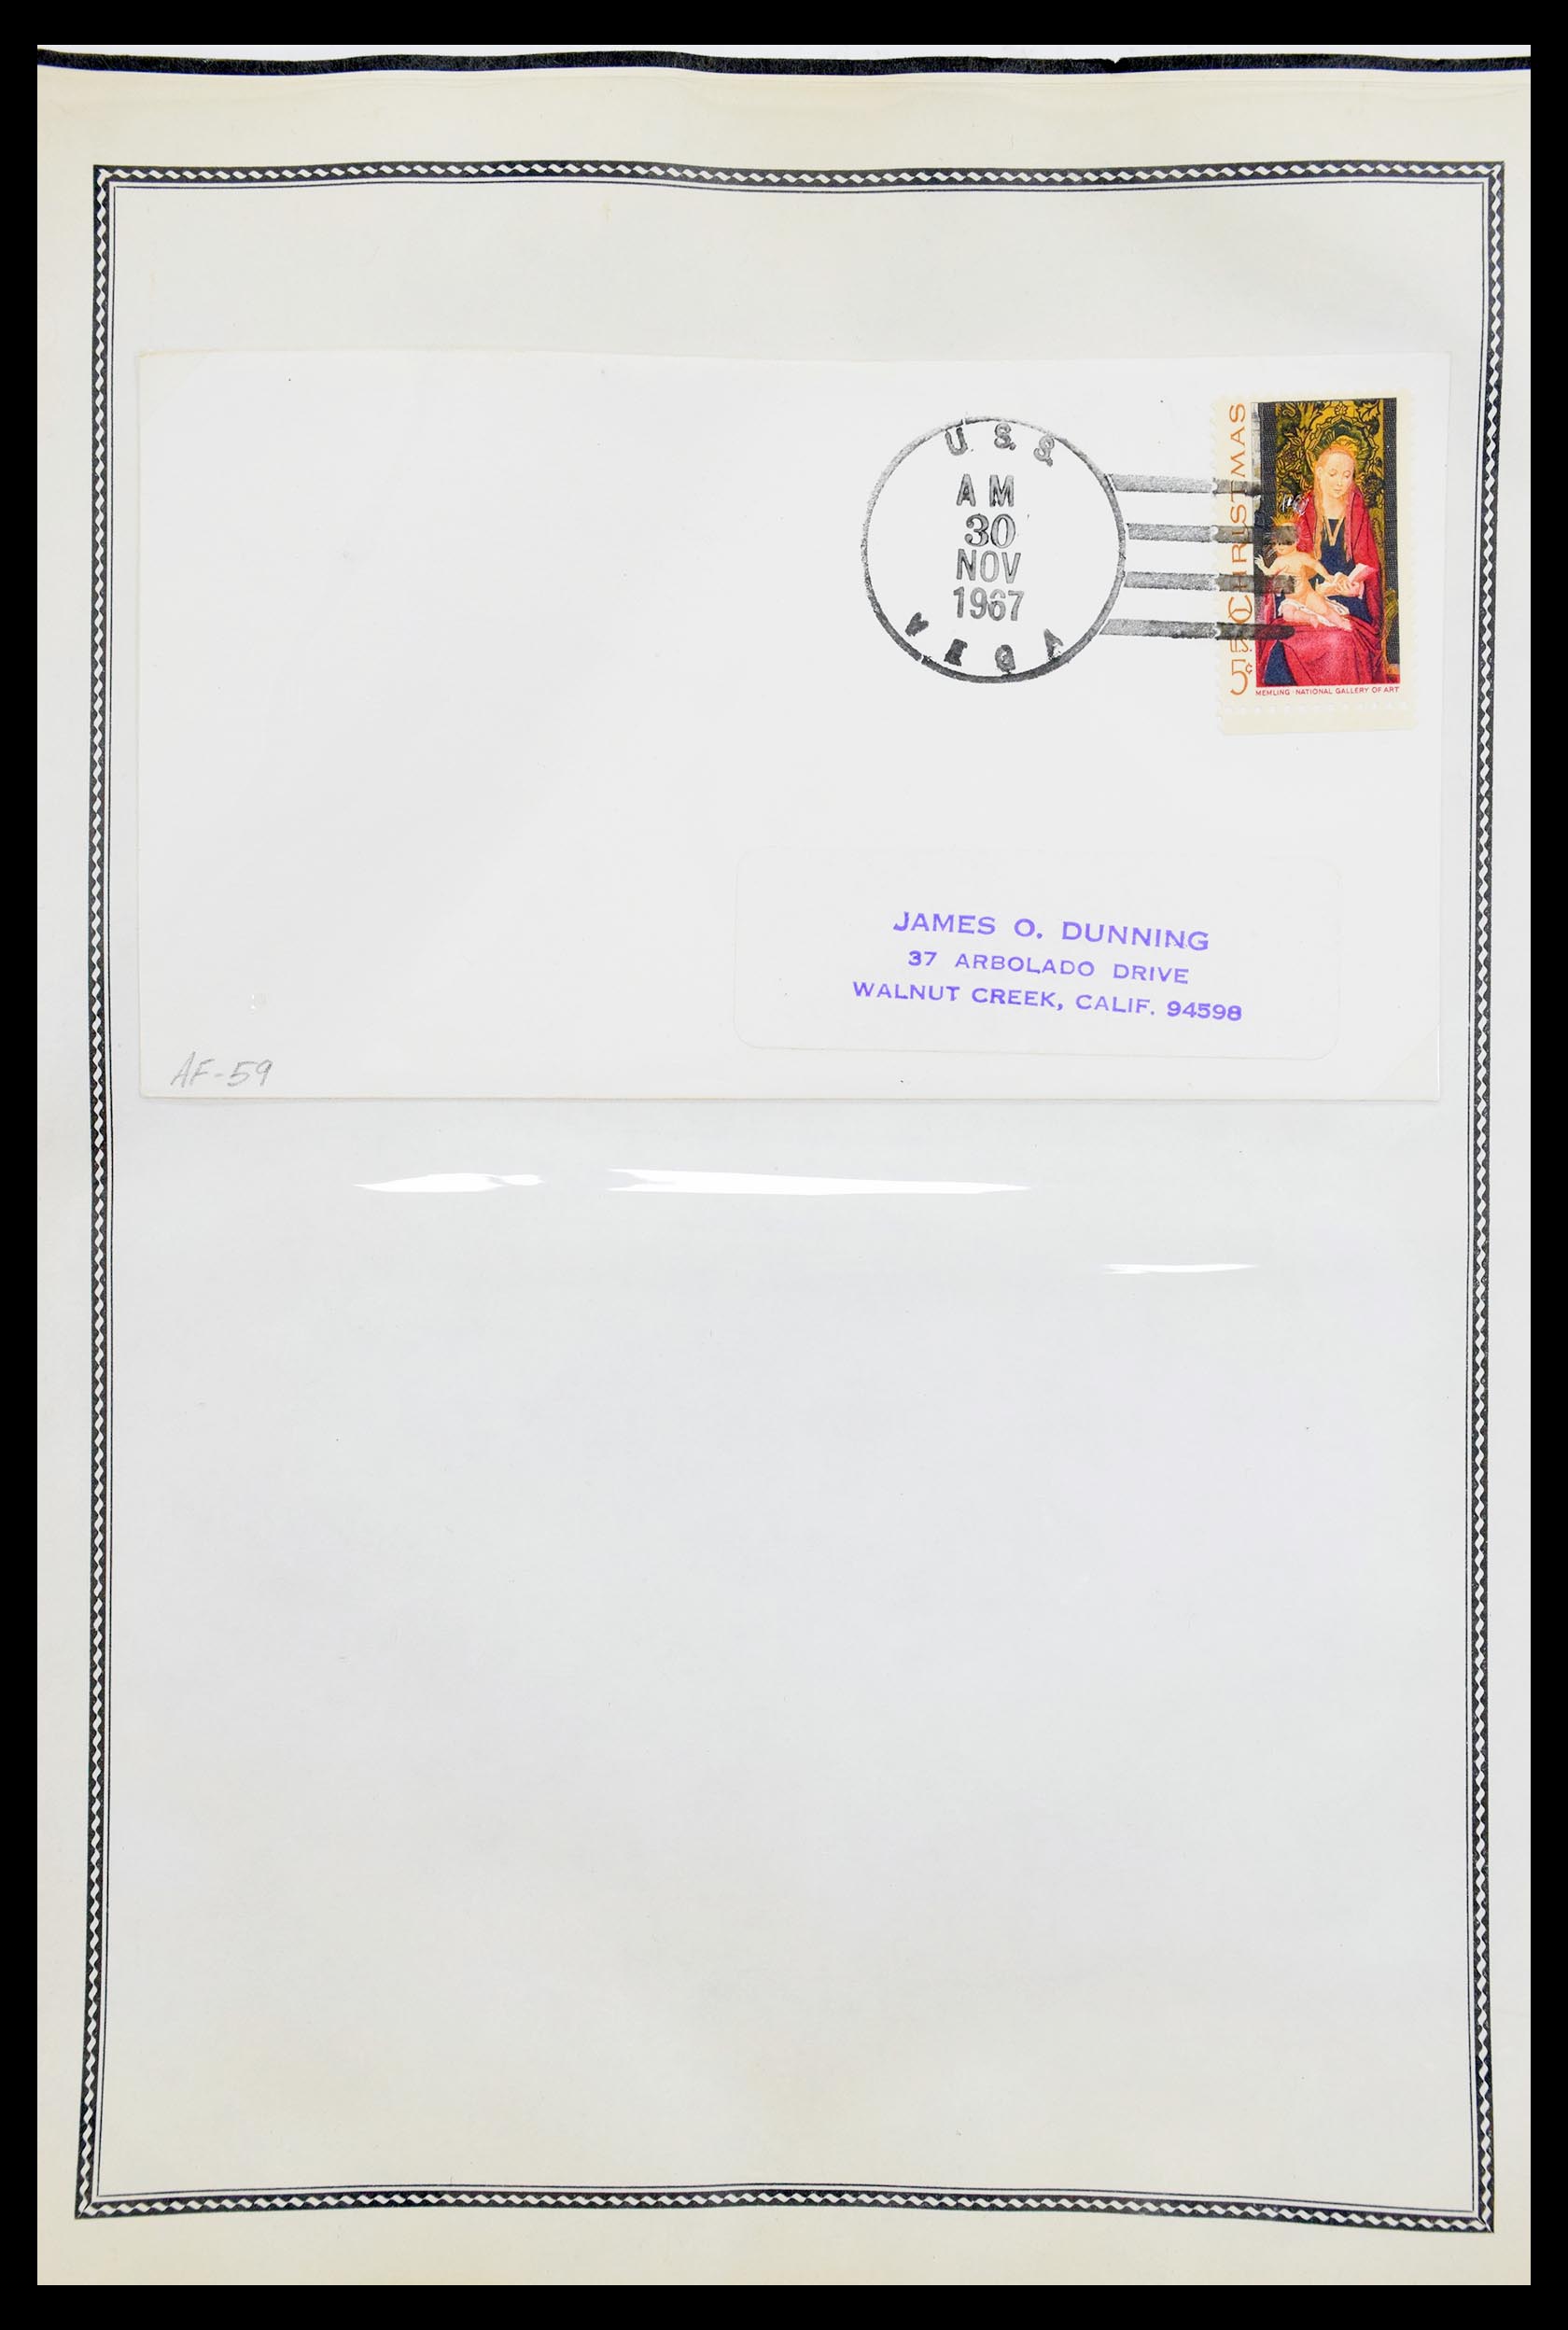 30341 030 - 30341 USA scheepspost brieven 1930-1970.